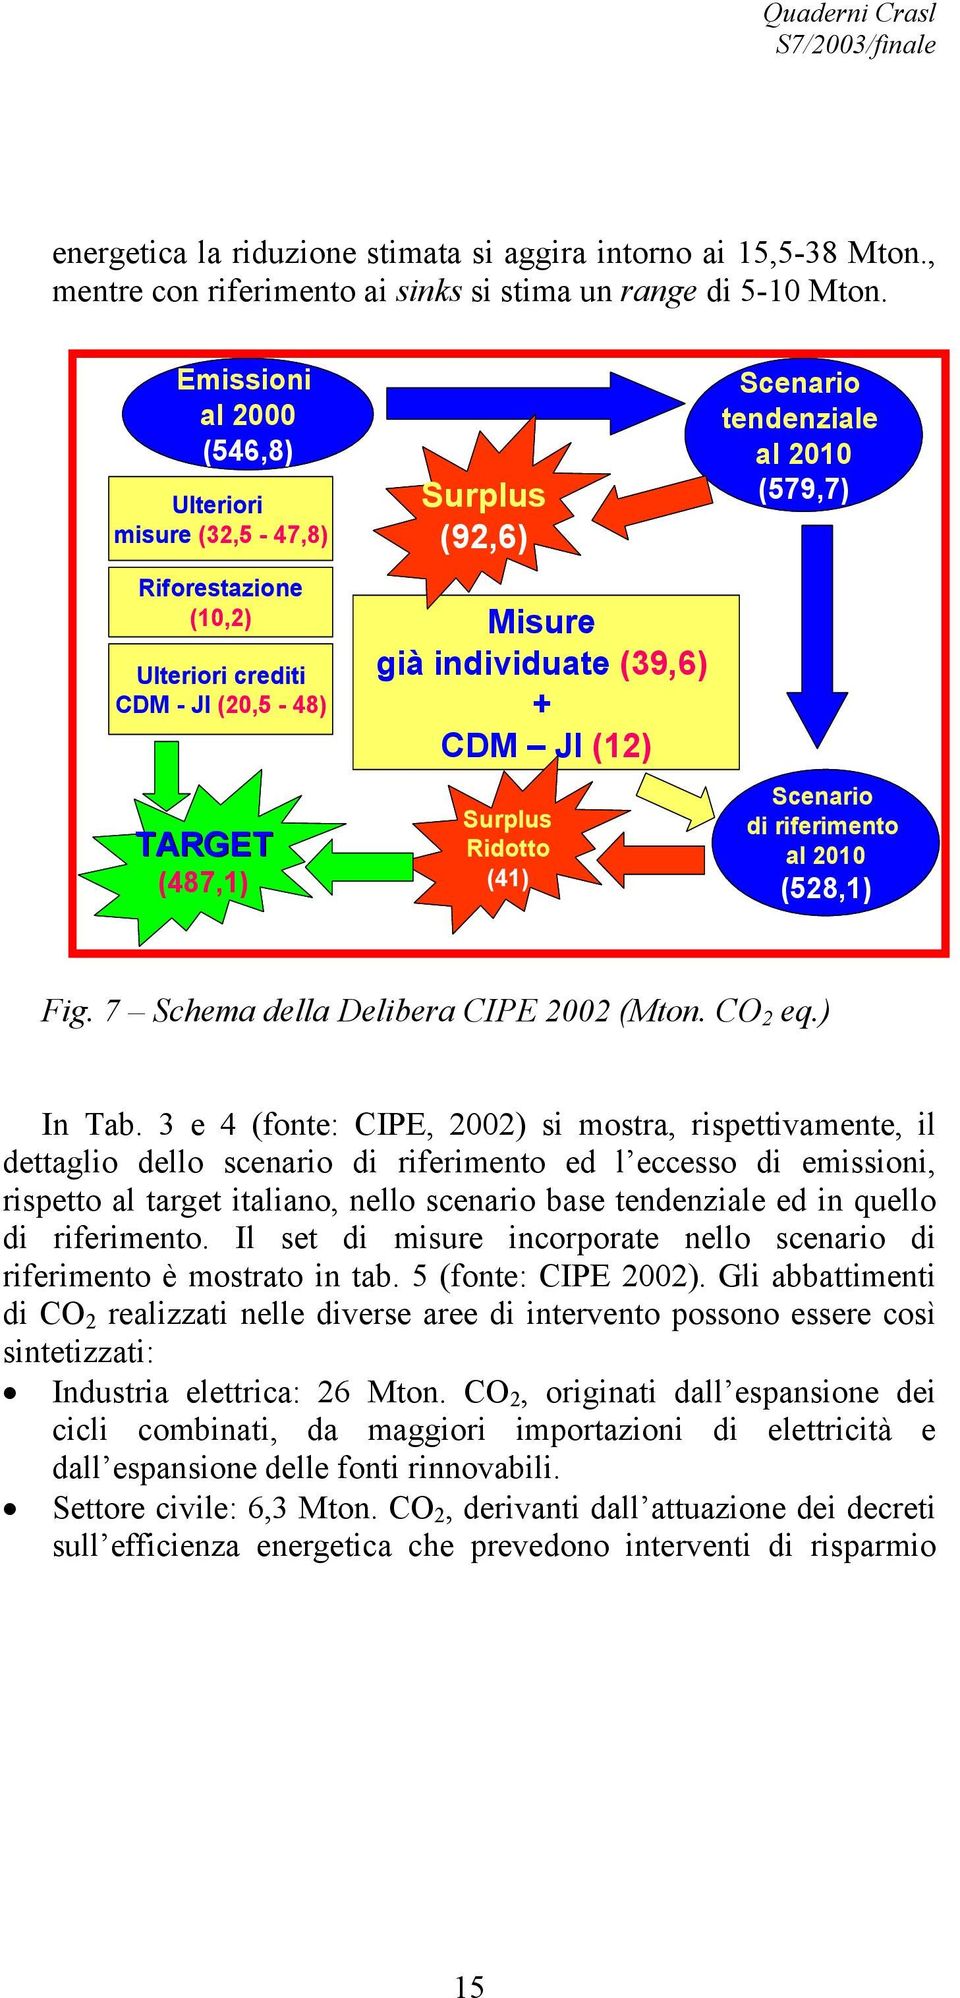 Ridotto (41) Scenario tendenziale al 2010 (579,7) Scenario di riferimento al 2010 (528,1) Fig. 7 Schema della Delibera CIPE 2002 (Mton. CO 2 eq.) In Tab.